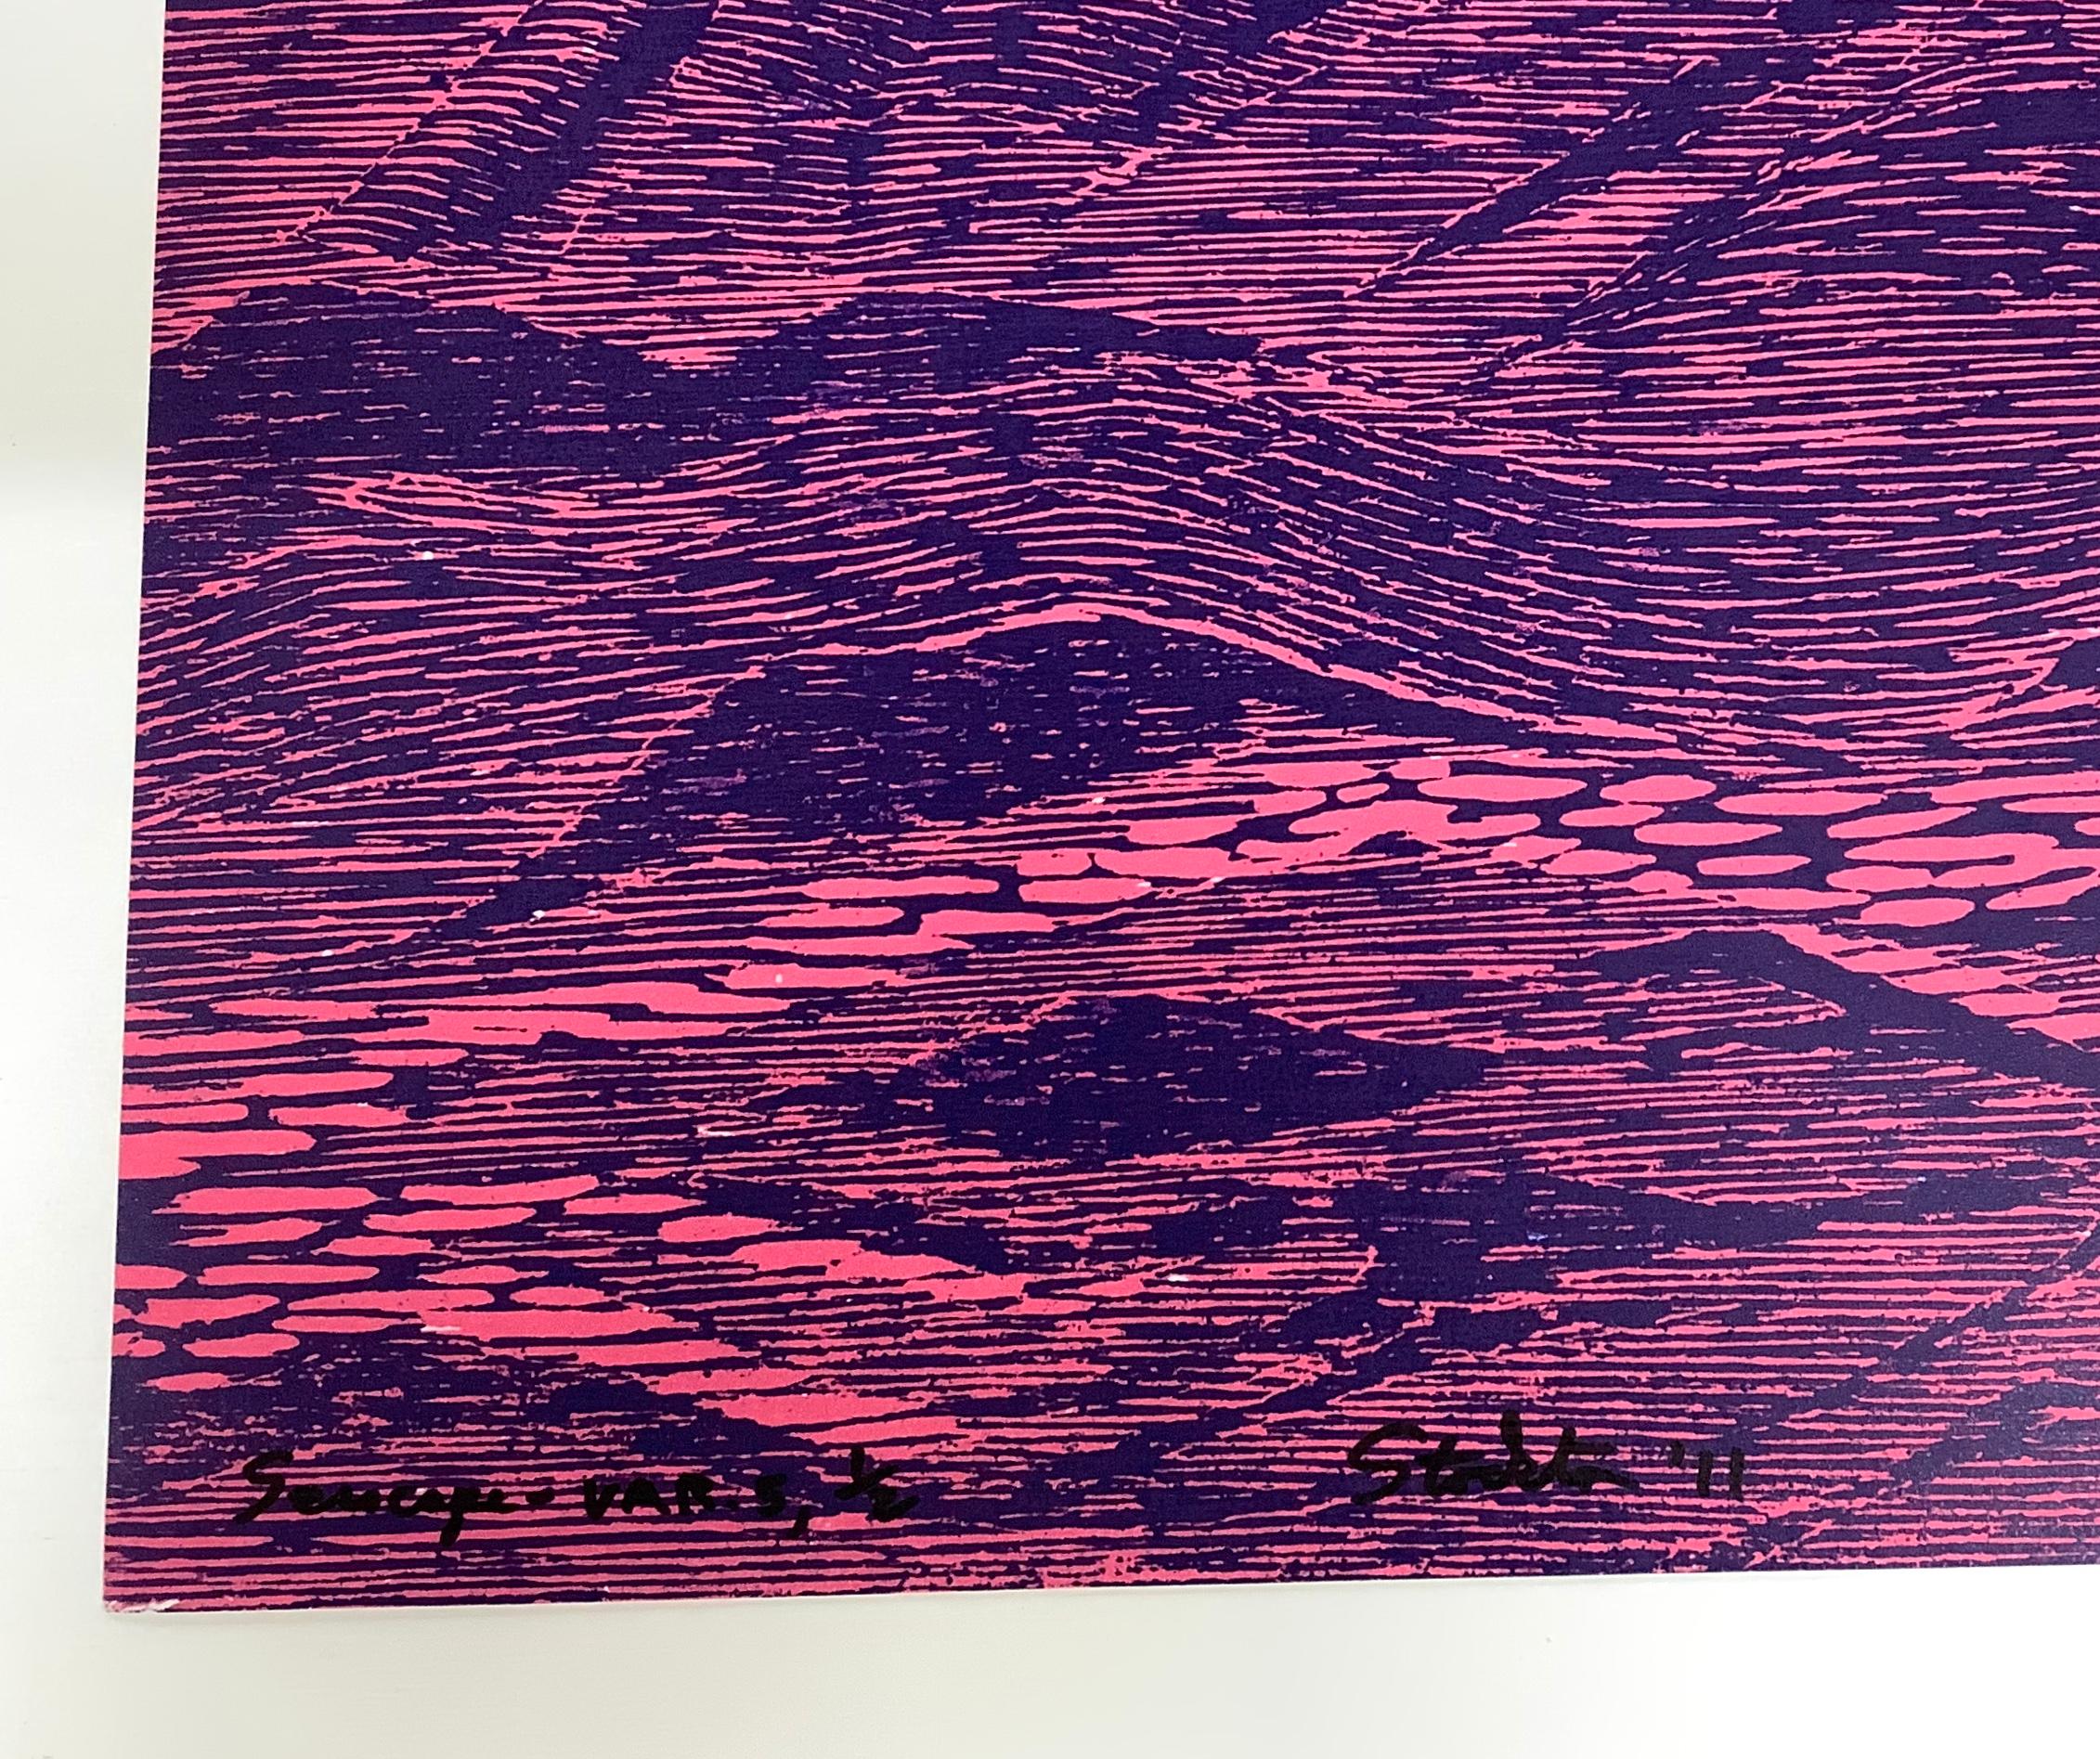 Dieser Holzschnitt erinnert an die Ruhe der Meereswellen, die in leuchtendem Pink und tiefem Kobaltblau dargestellt sind. Er erinnert an die Tradition der japanischen Druckkunst und ist gleichzeitig ausgesprochen modern. 

Auflage 1/2. Rückseitig